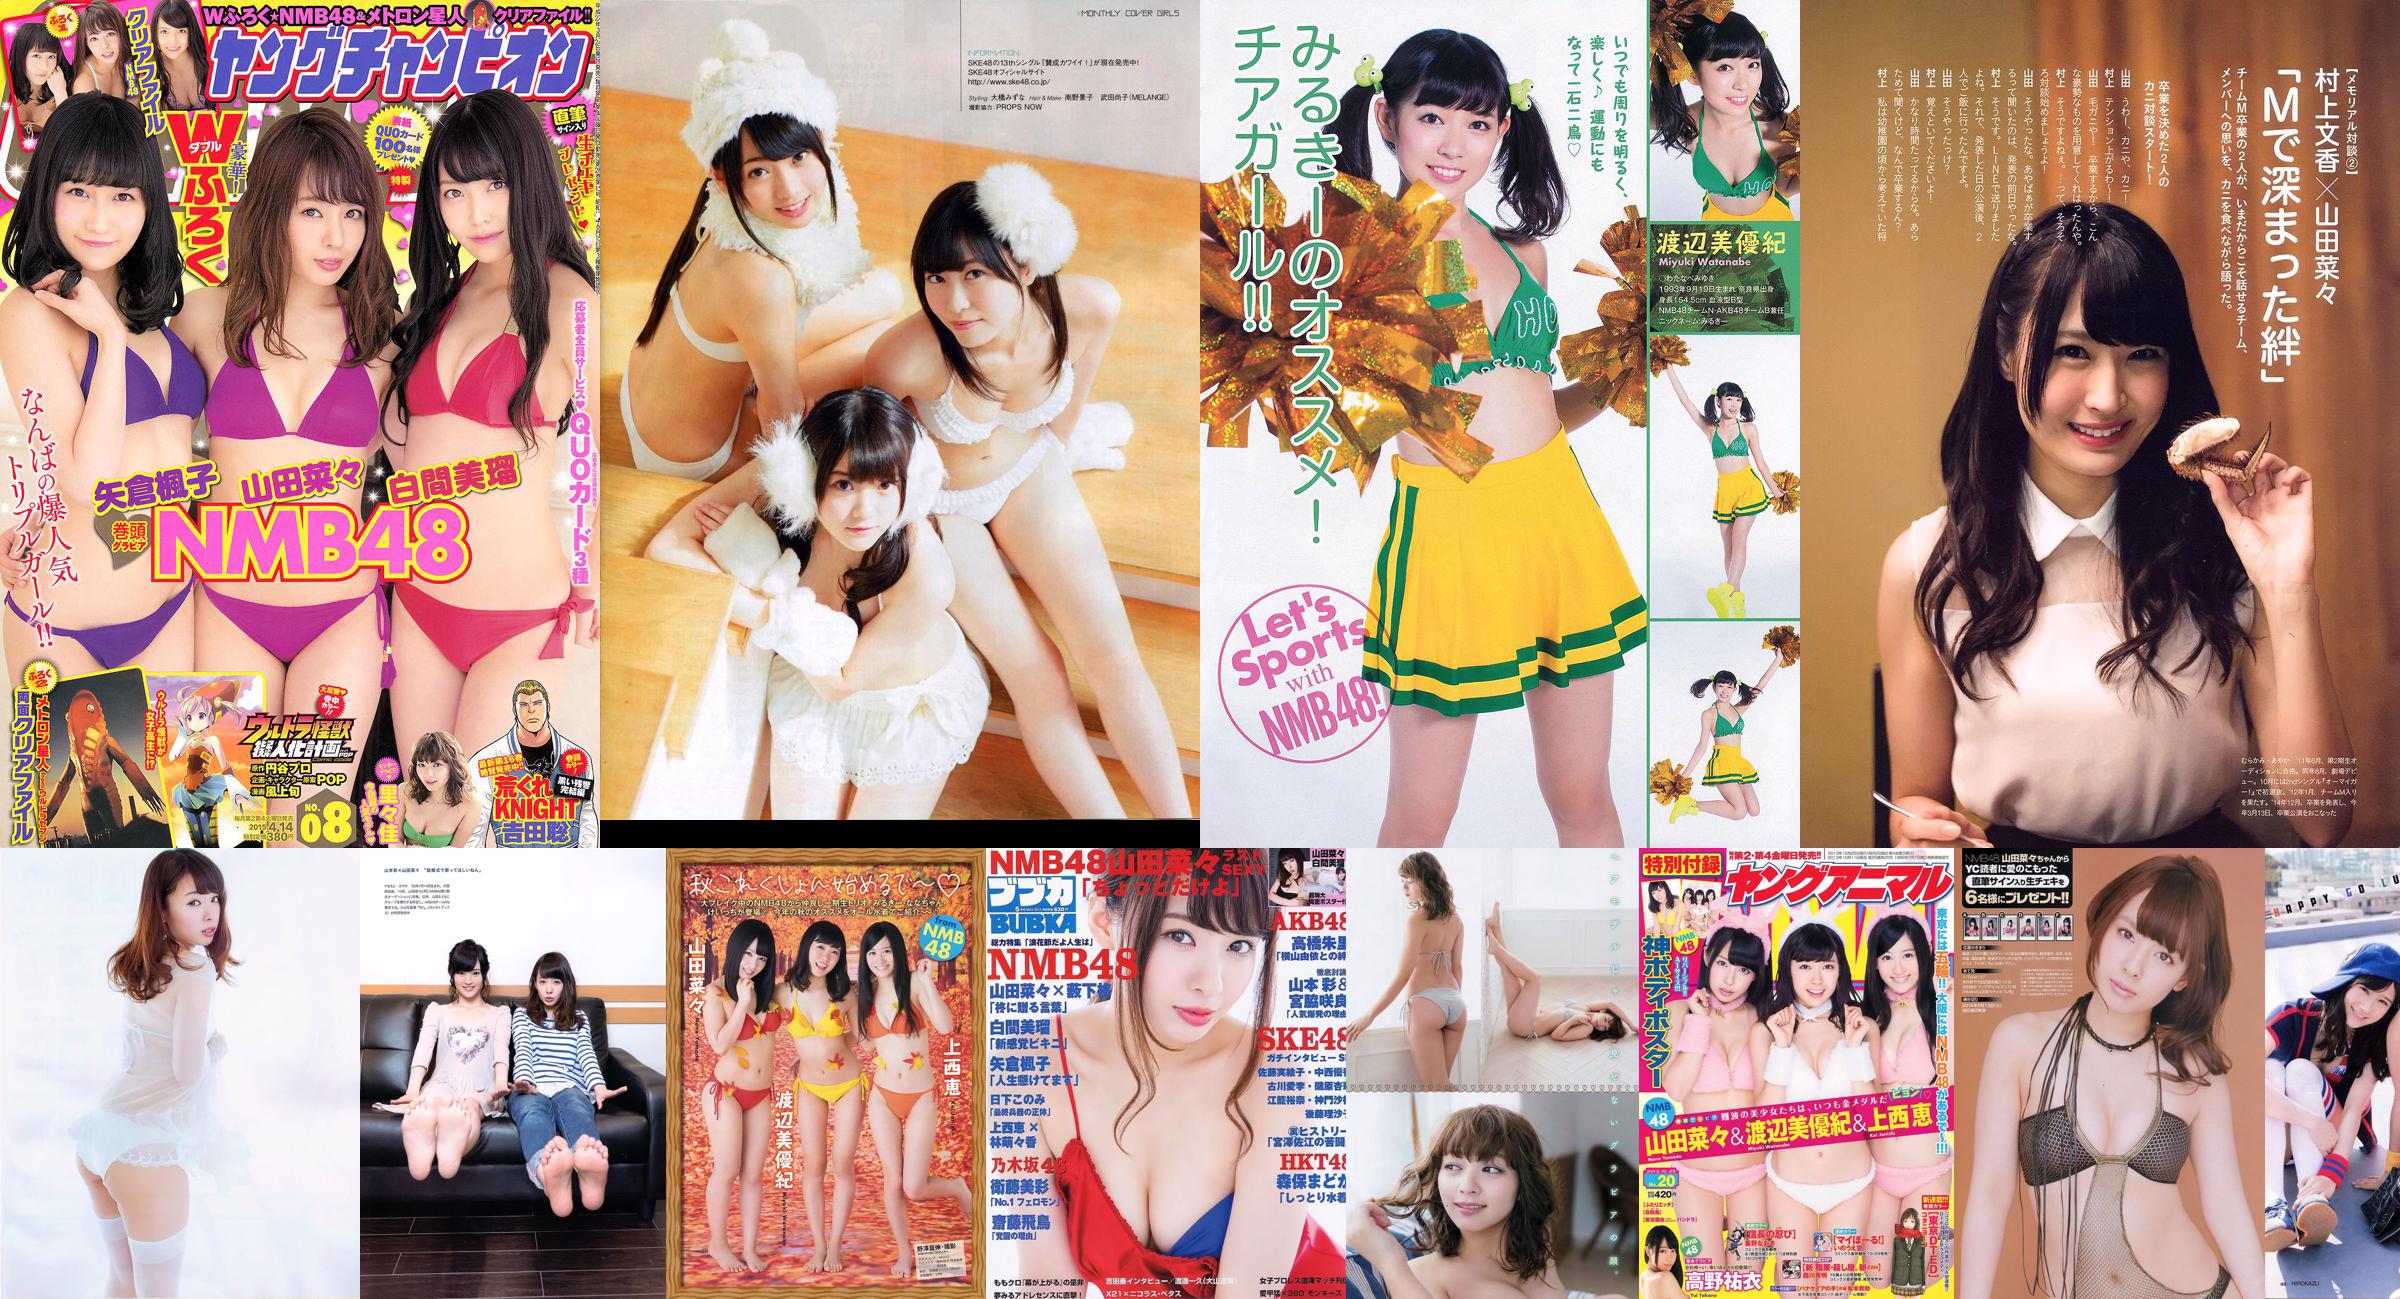 [BUBKA] Nana Yamada Miru Shiroma SKE48 Madoka Moriyasu Misa Eto 2015.05 Photograph No.c91d64 Page 1